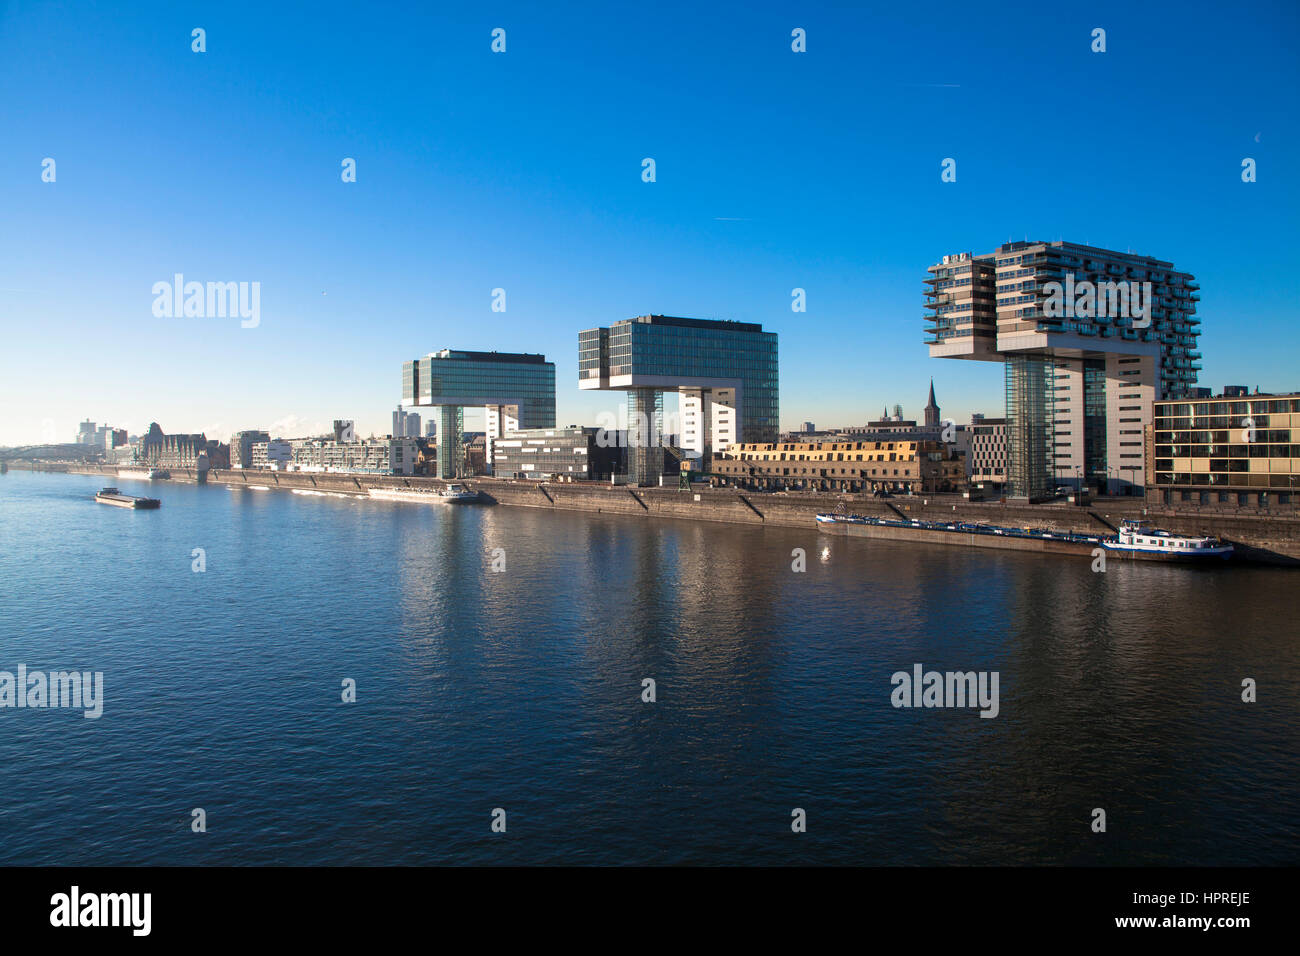 Europa, Deutschland, Köln, die Kran-Häuser am Hafen Rheinau Architekten Hadi Teherani, Rhein. Stockfoto